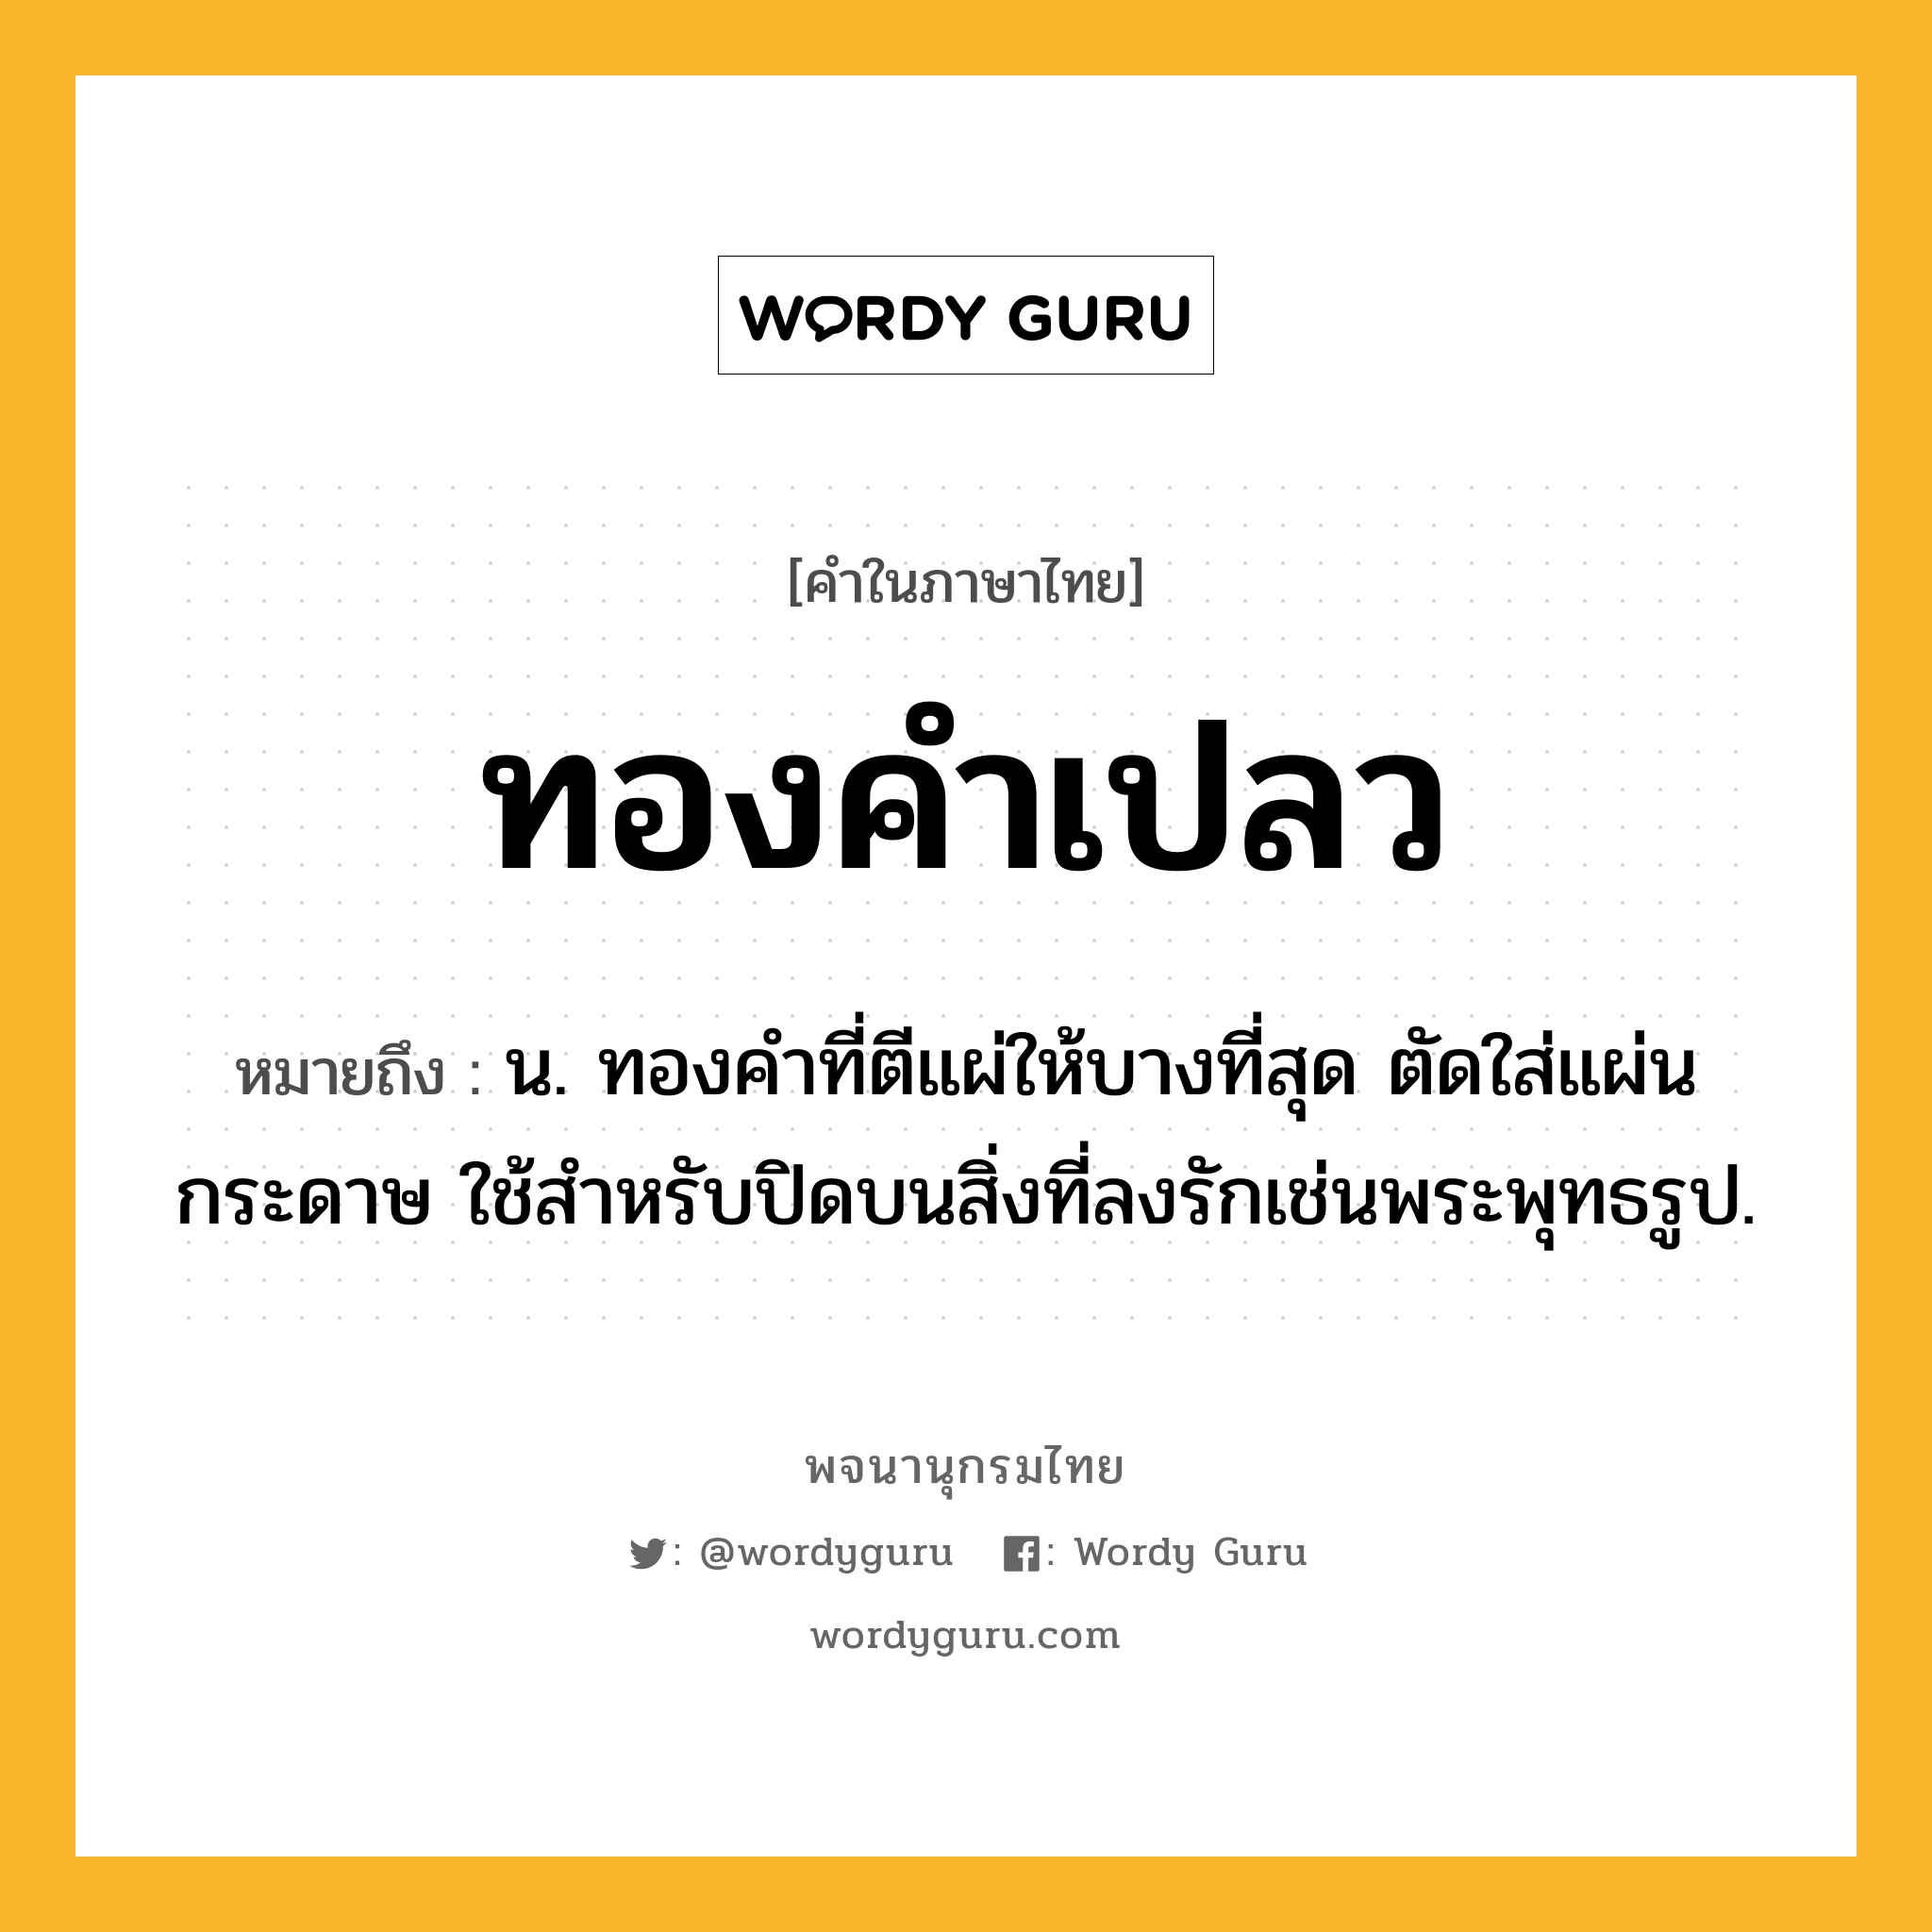 ทองคำเปลว หมายถึงอะไร?, คำในภาษาไทย ทองคำเปลว หมายถึง น. ทองคําที่ตีแผ่ให้บางที่สุด ตัดใส่แผ่นกระดาษ ใช้สําหรับปิดบนสิ่งที่ลงรักเช่นพระพุทธรูป.